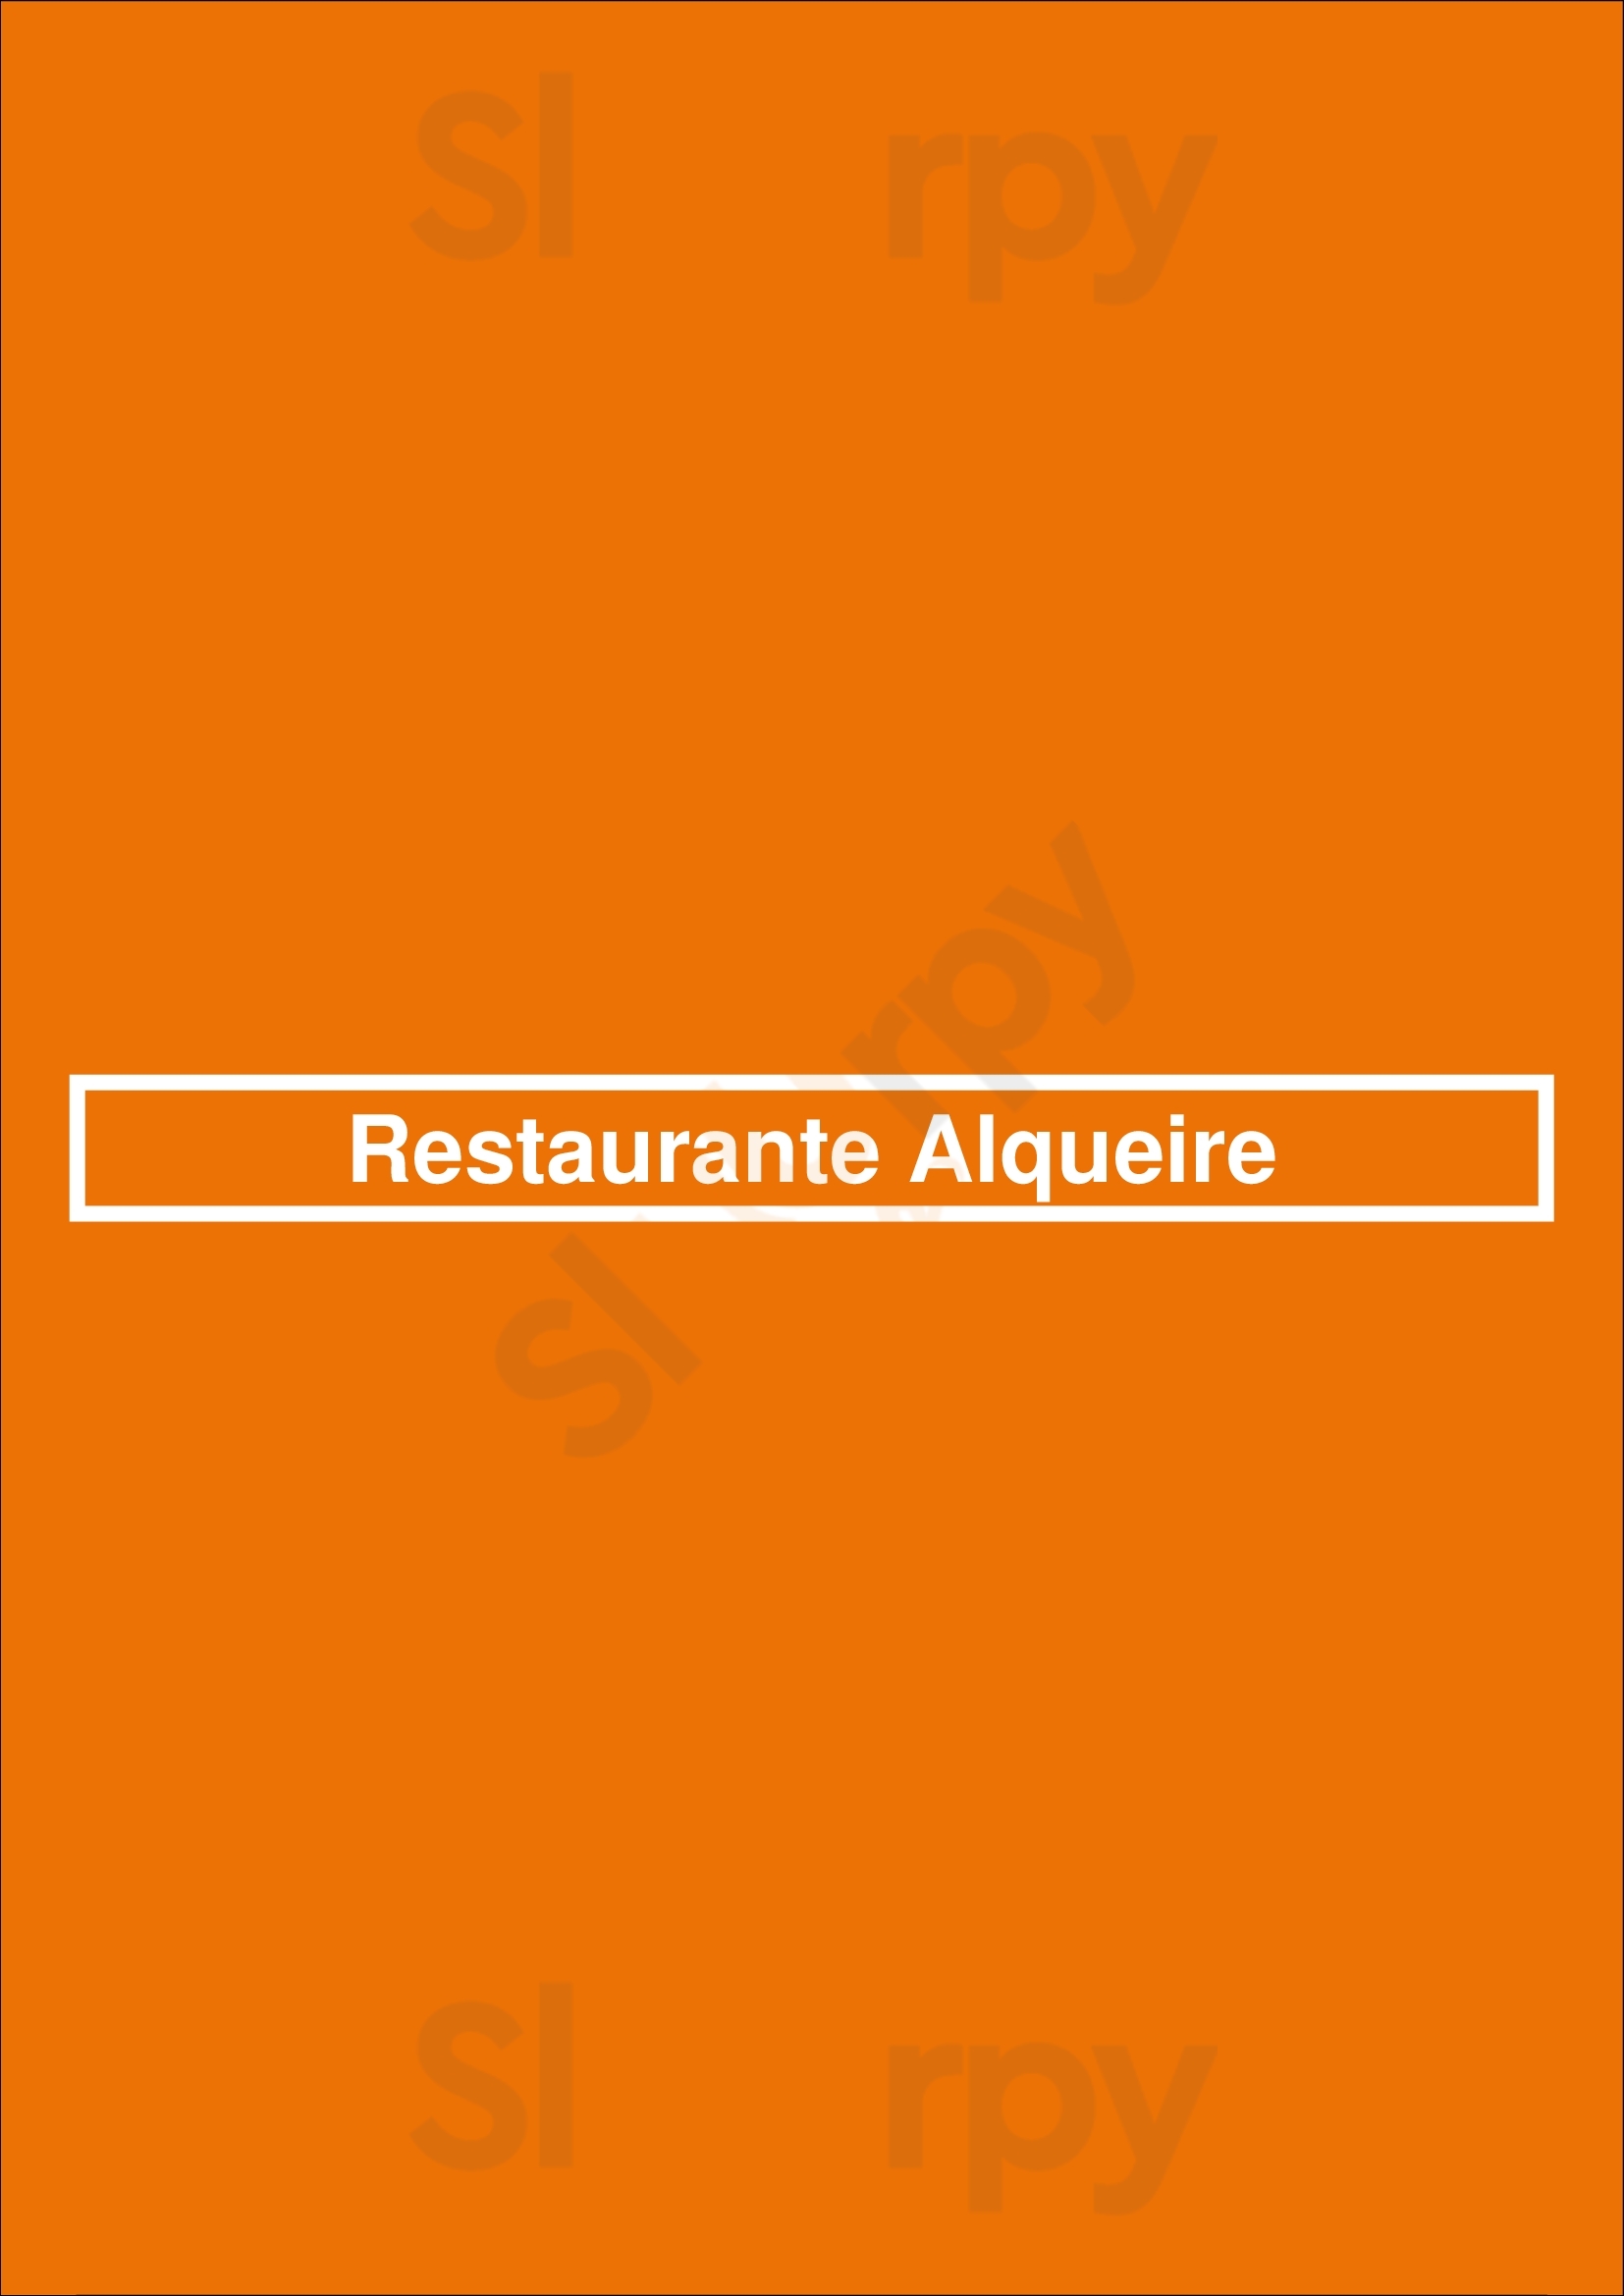 Restaurante Alqueire Lisboa Menu - 1